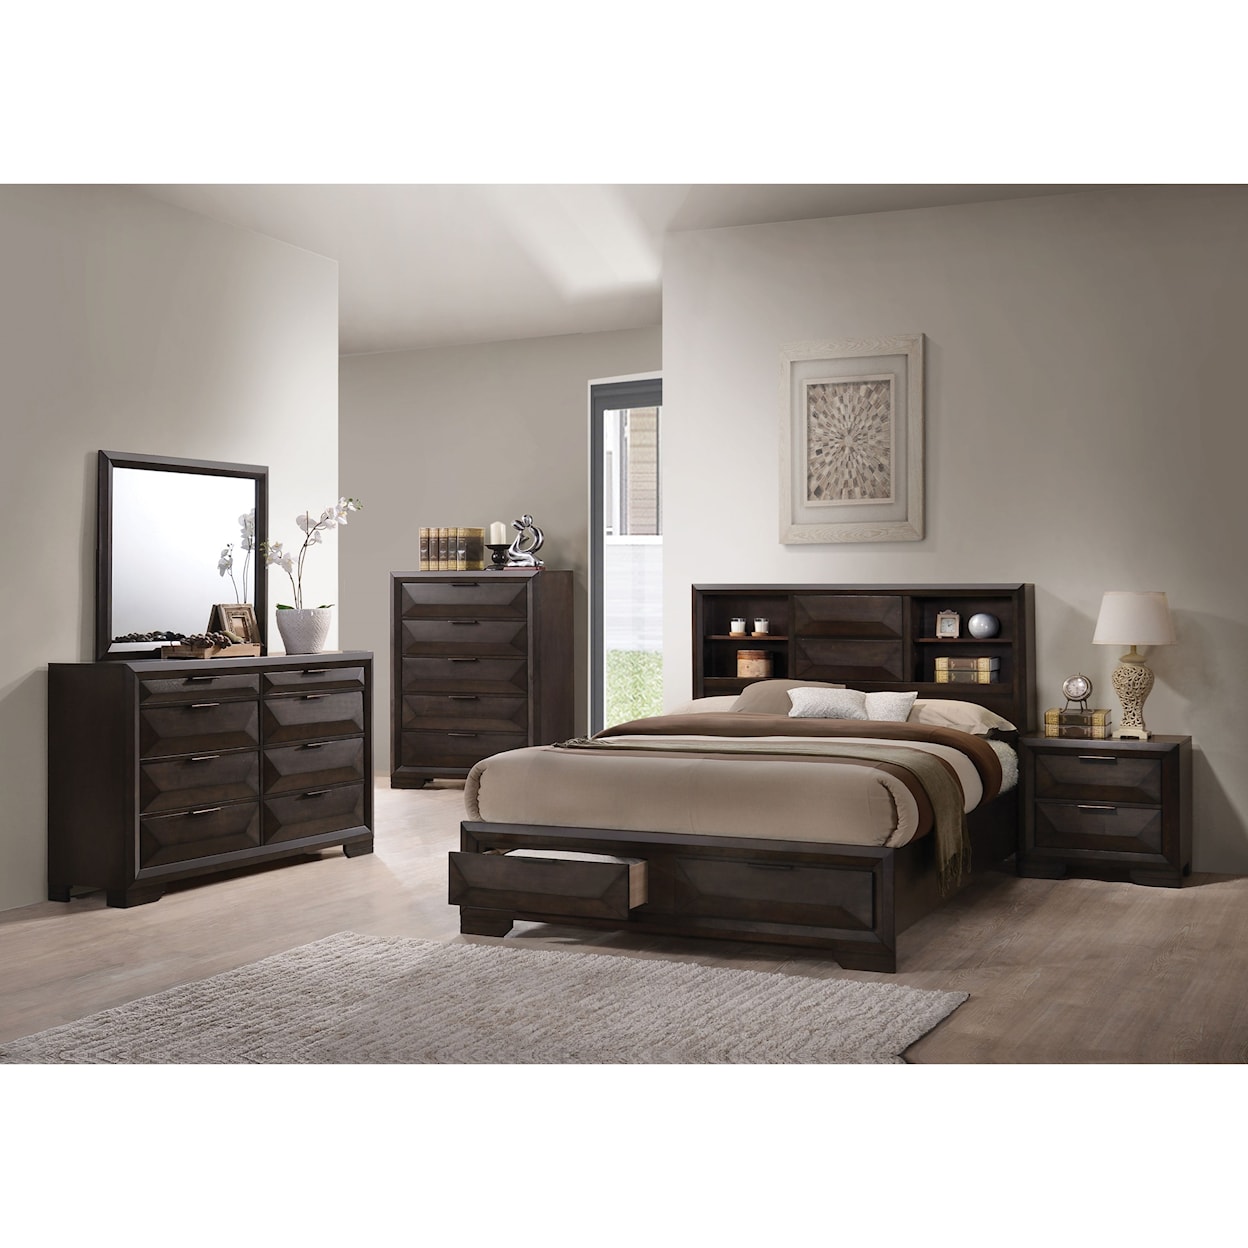 Acme Furniture Merveille 7pc Queen Bedroom Group